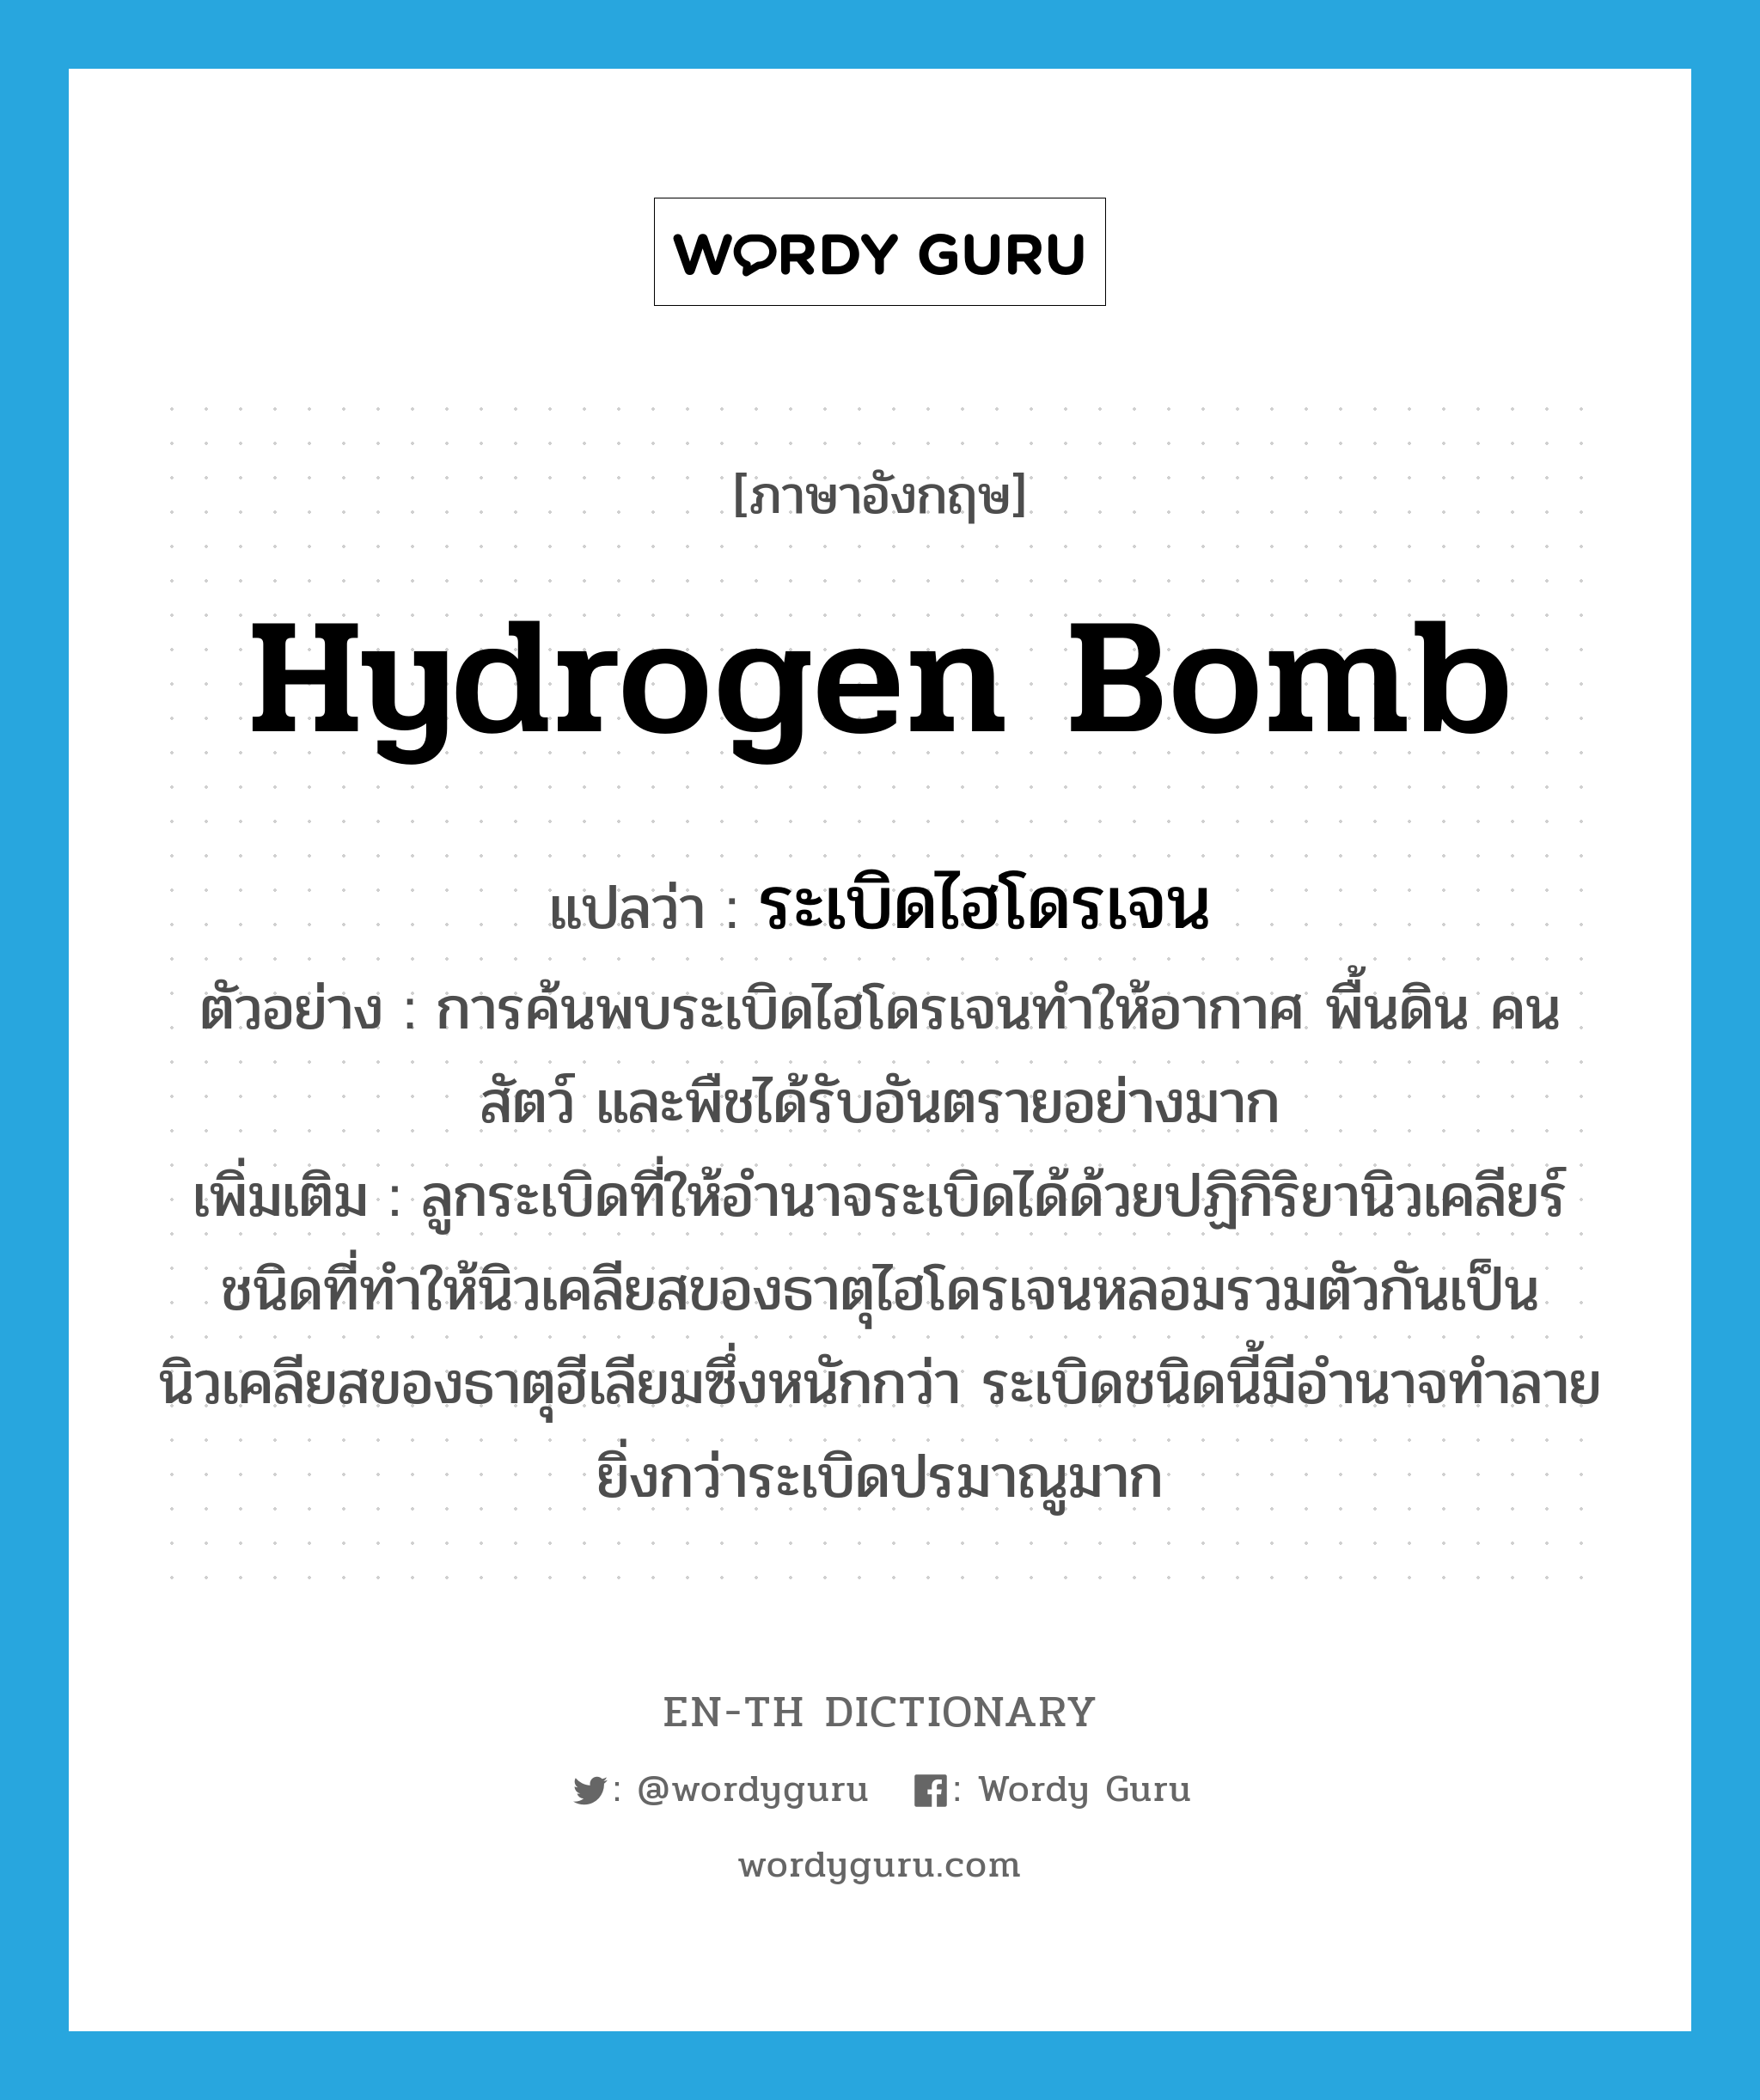 ระเบิดไฮโดรเจน ภาษาอังกฤษ?, คำศัพท์ภาษาอังกฤษ ระเบิดไฮโดรเจน แปลว่า hydrogen bomb ประเภท N ตัวอย่าง การค้นพบระเบิดไฮโดรเจนทำให้อากาศ พื้นดิน คน สัตว์ และพืชได้รับอันตรายอย่างมาก เพิ่มเติม ลูกระเบิดที่ให้อำนาจระเบิดได้ด้วยปฏิกิริยานิวเคลียร์ชนิดที่ทำให้นิวเคลียสของธาตุไฮโดรเจนหลอมรวมตัวกันเป็นนิวเคลียสของธาตุฮีเลียมซึ่งหนักกว่า ระเบิดชนิดนี้มีอำนาจทำลายยิ่งกว่าระเบิดปรมาณูมาก หมวด N